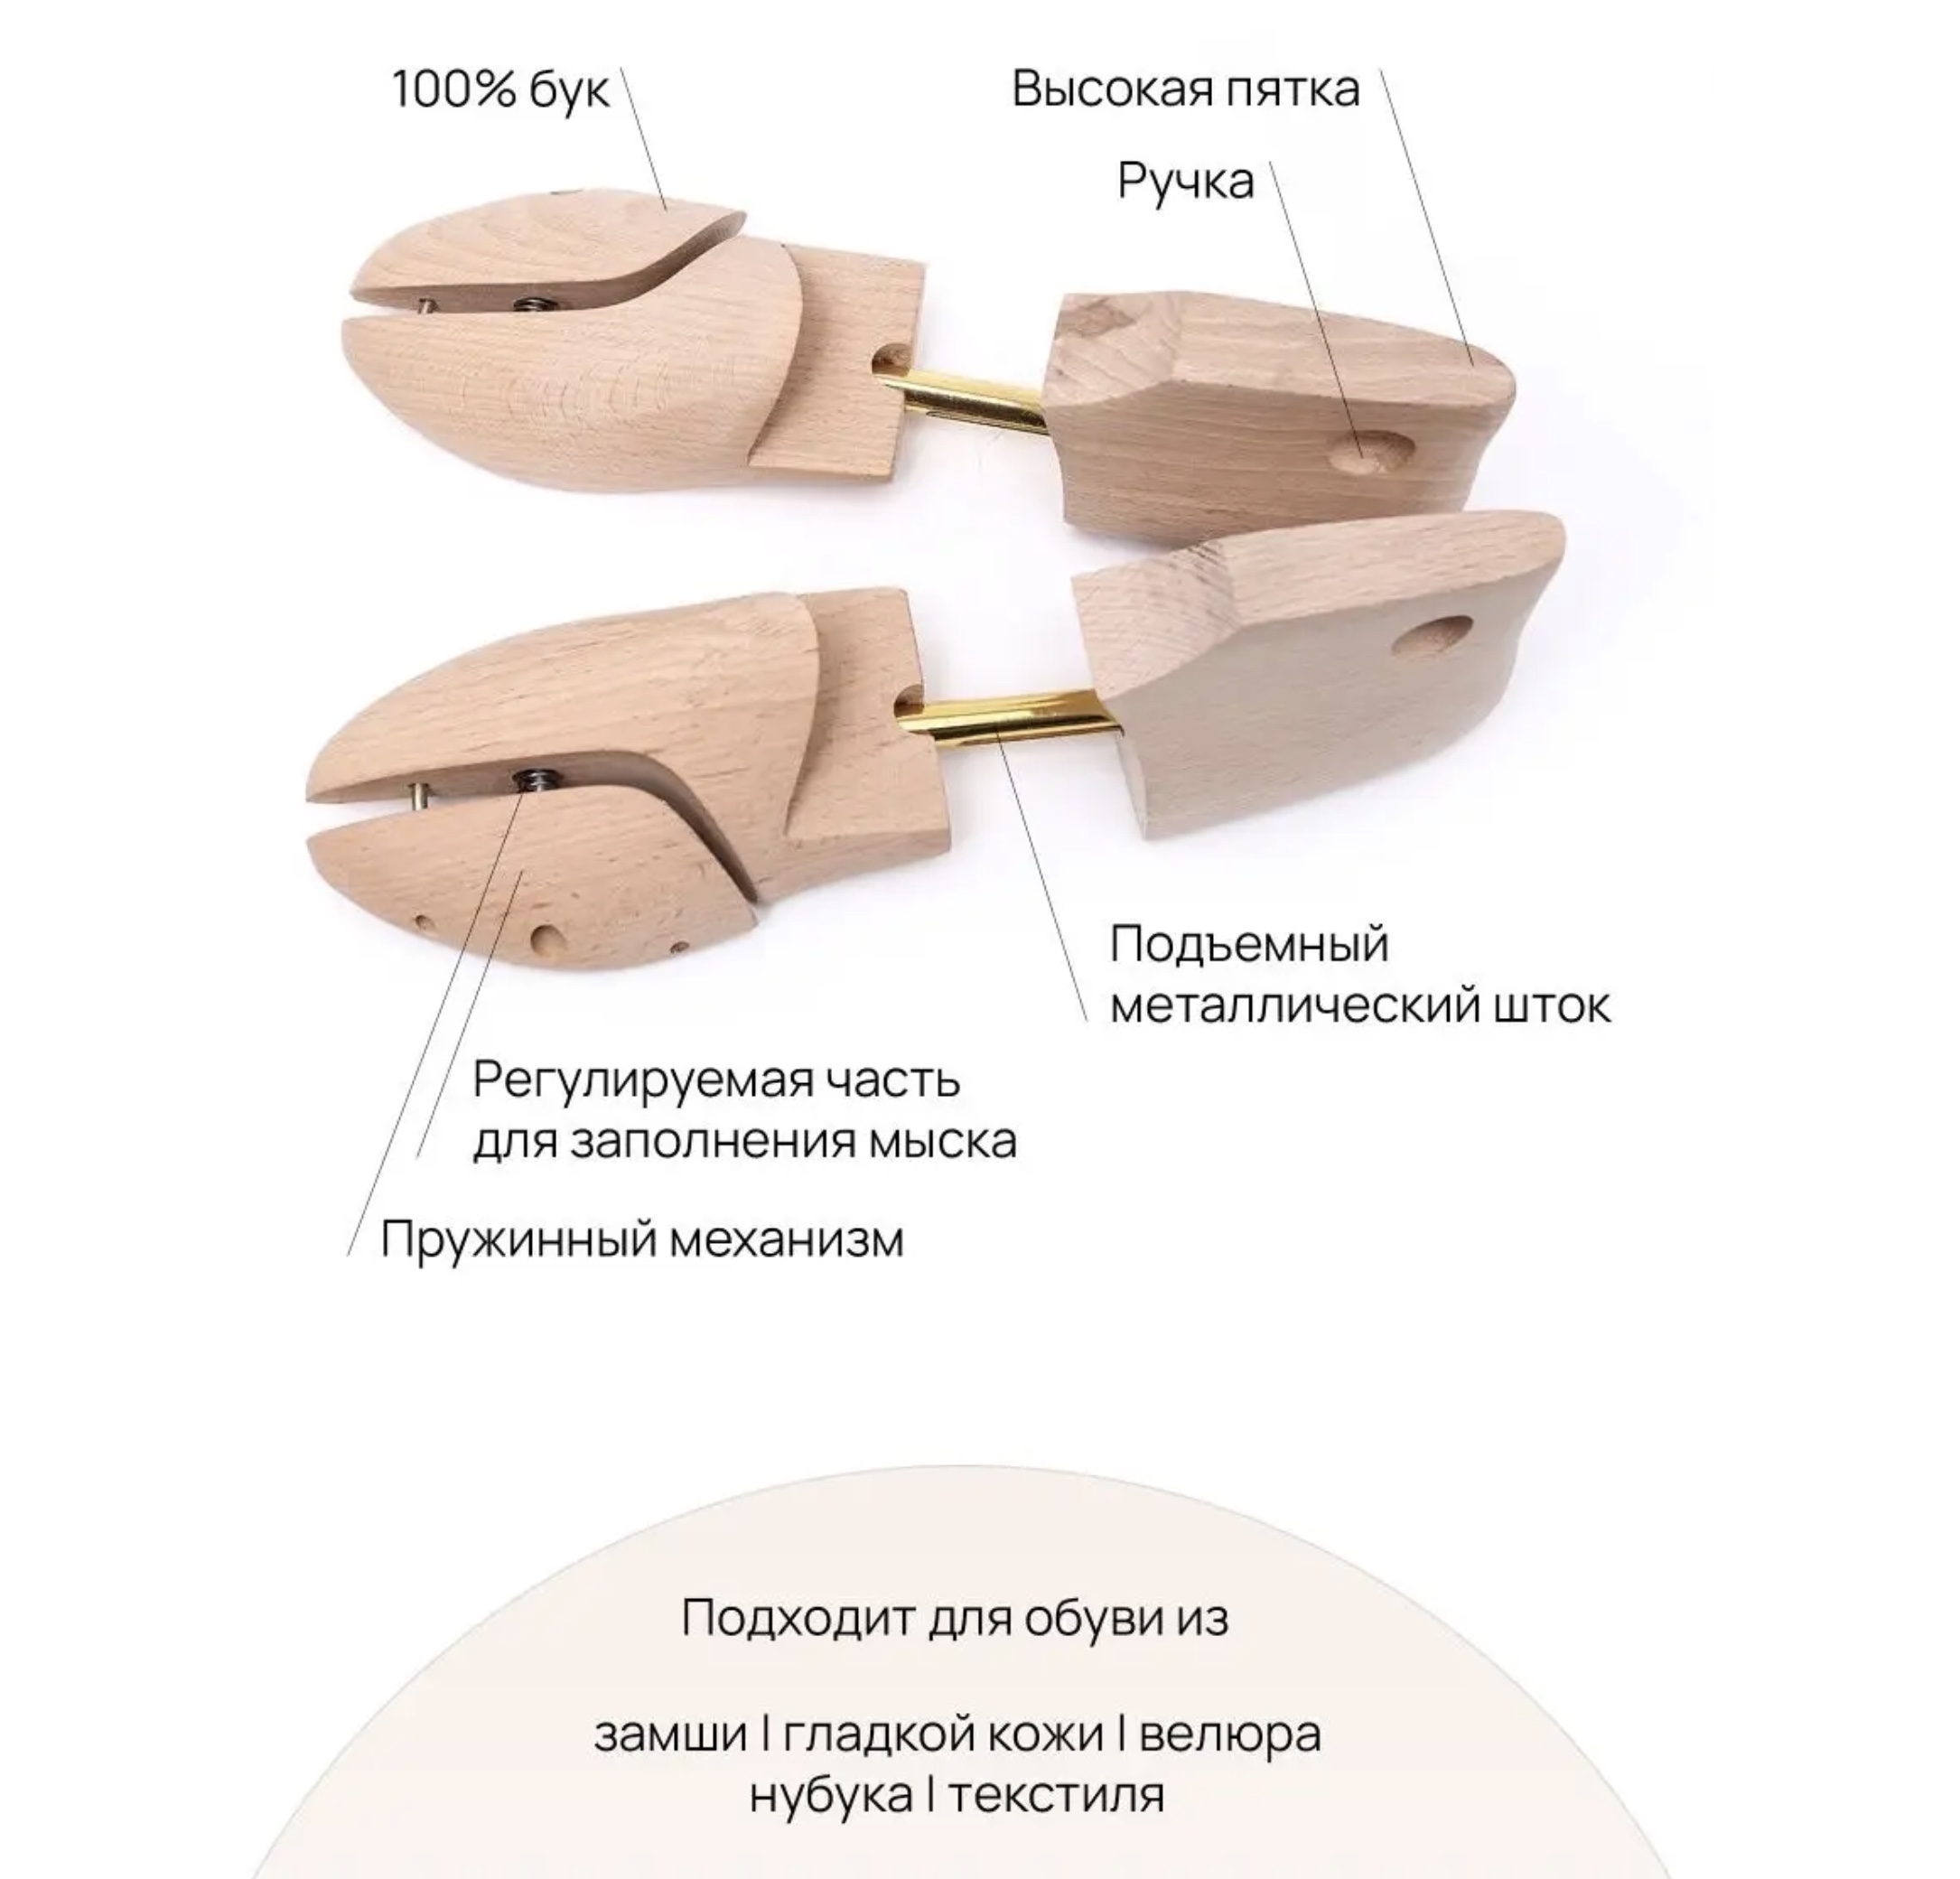 Картинка Формодержатели Valvi с высокой пяткой бук от магазина Vaksa.ru